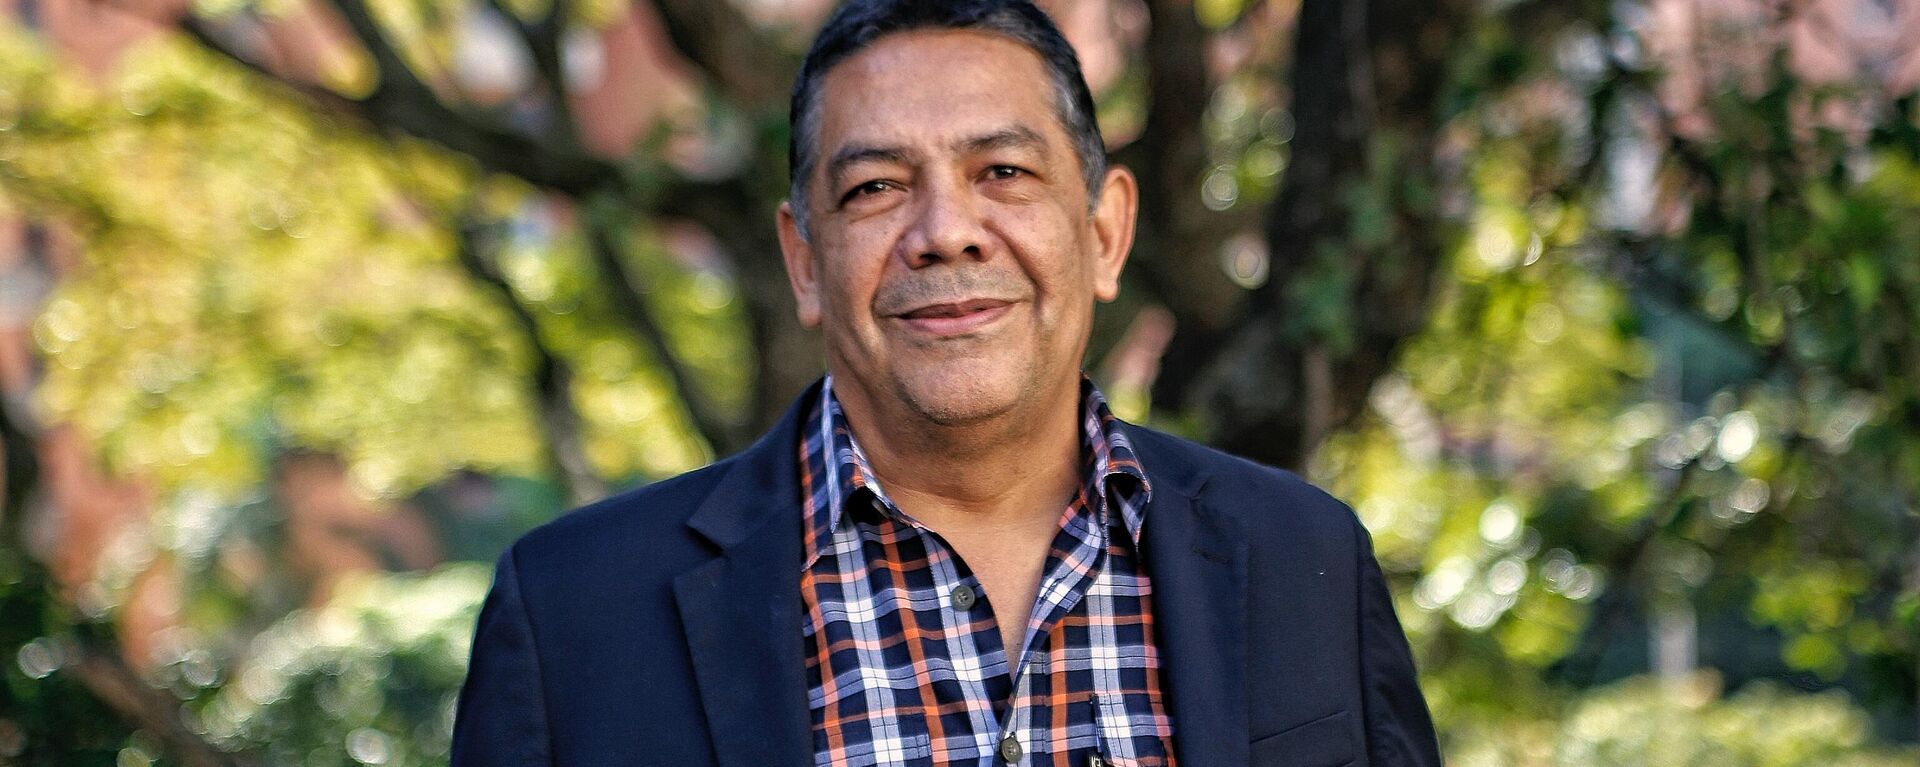 William Castillo, viceministro de Políticas Antibloqueo de Venezuela - Sputnik Mundo, 1920, 09.12.2021